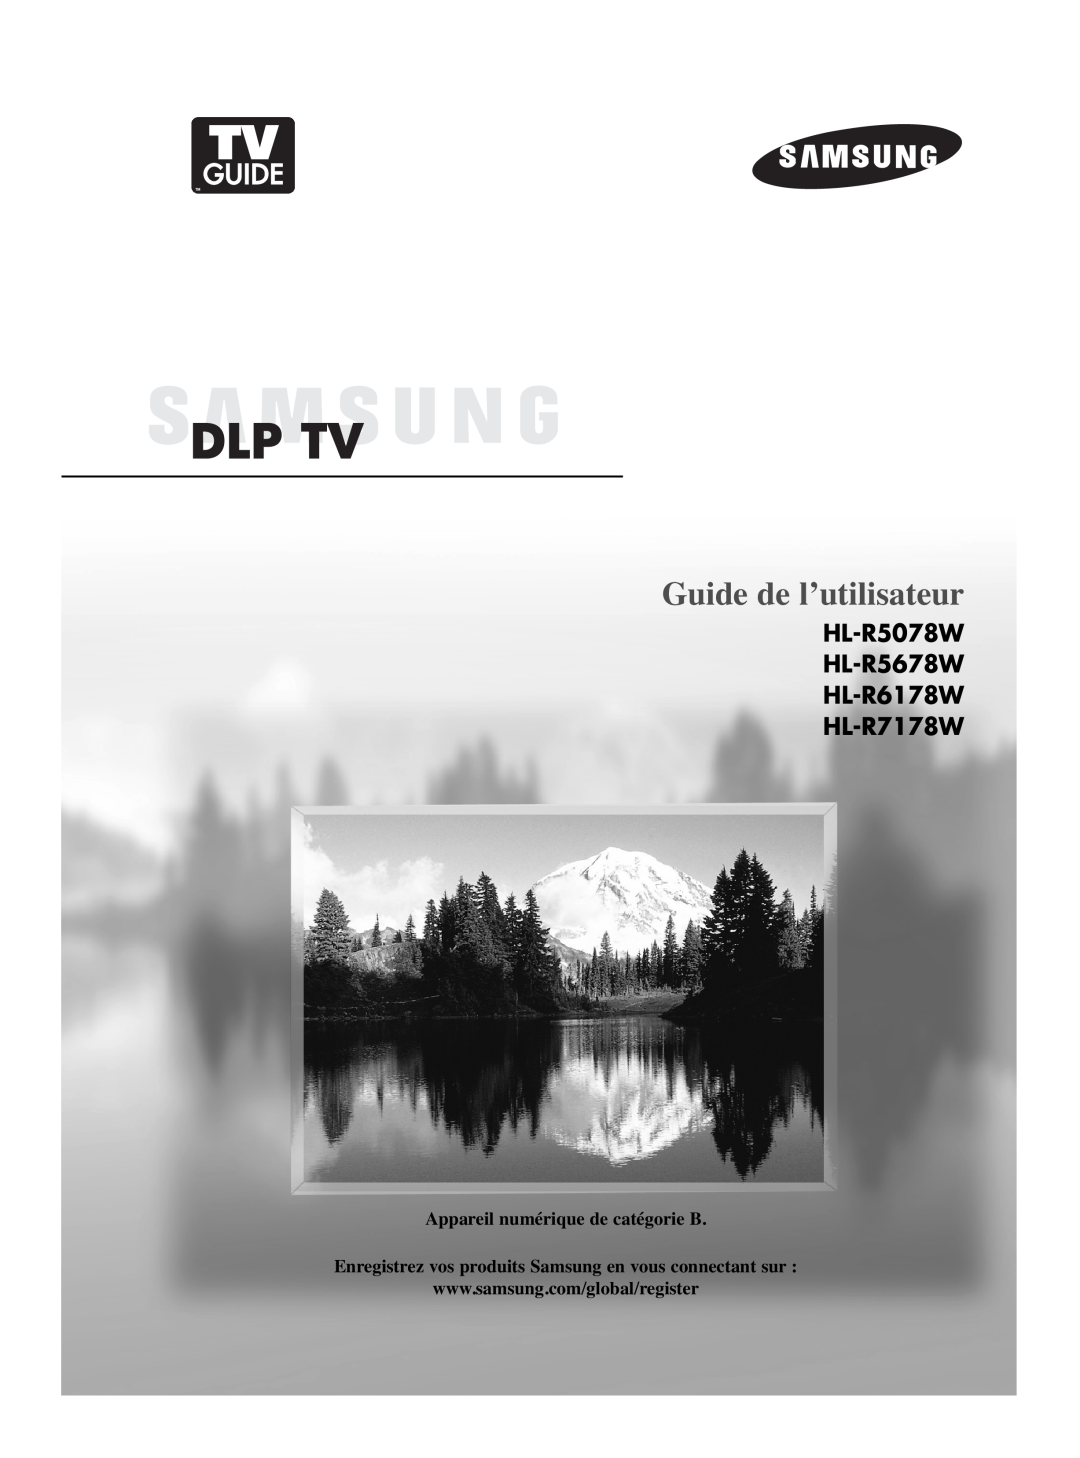 Samsung manual Manual de instrucciones, HL-R5078W HL-R5678W HL-R6178W HL-R7178W 